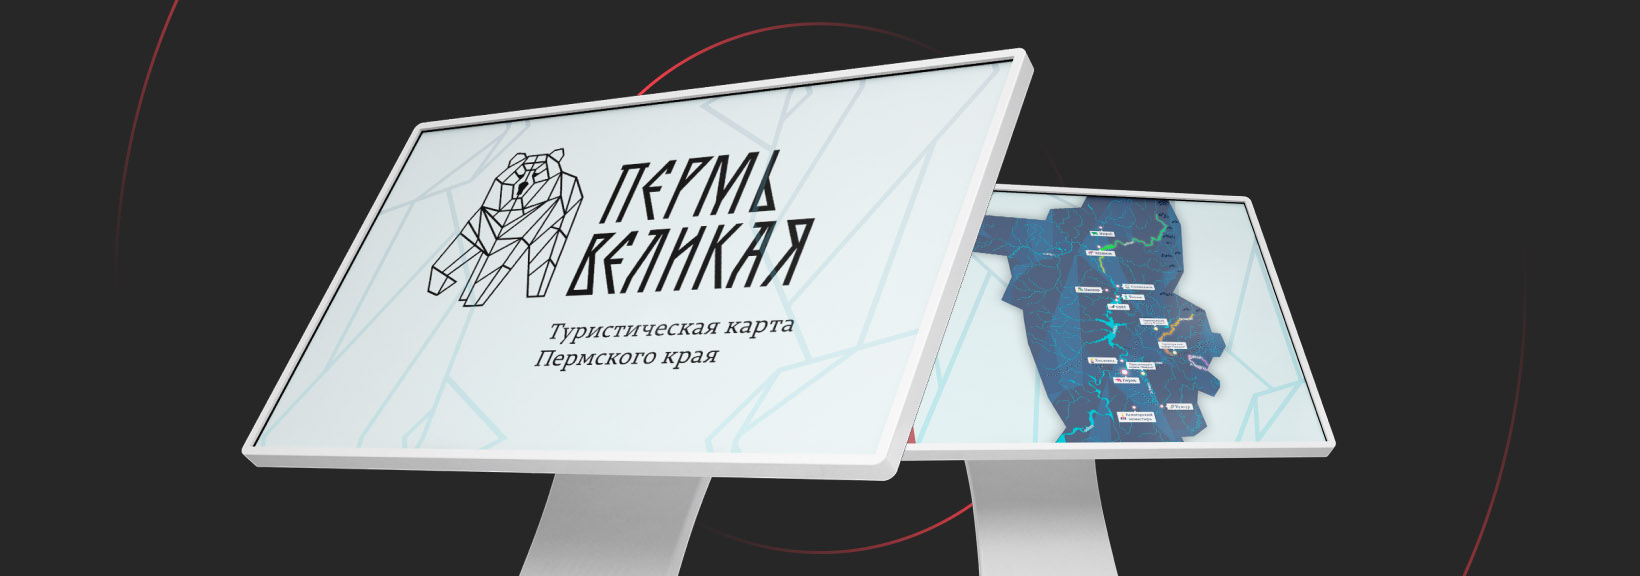 Интерактивная карта «Пермь Великая»